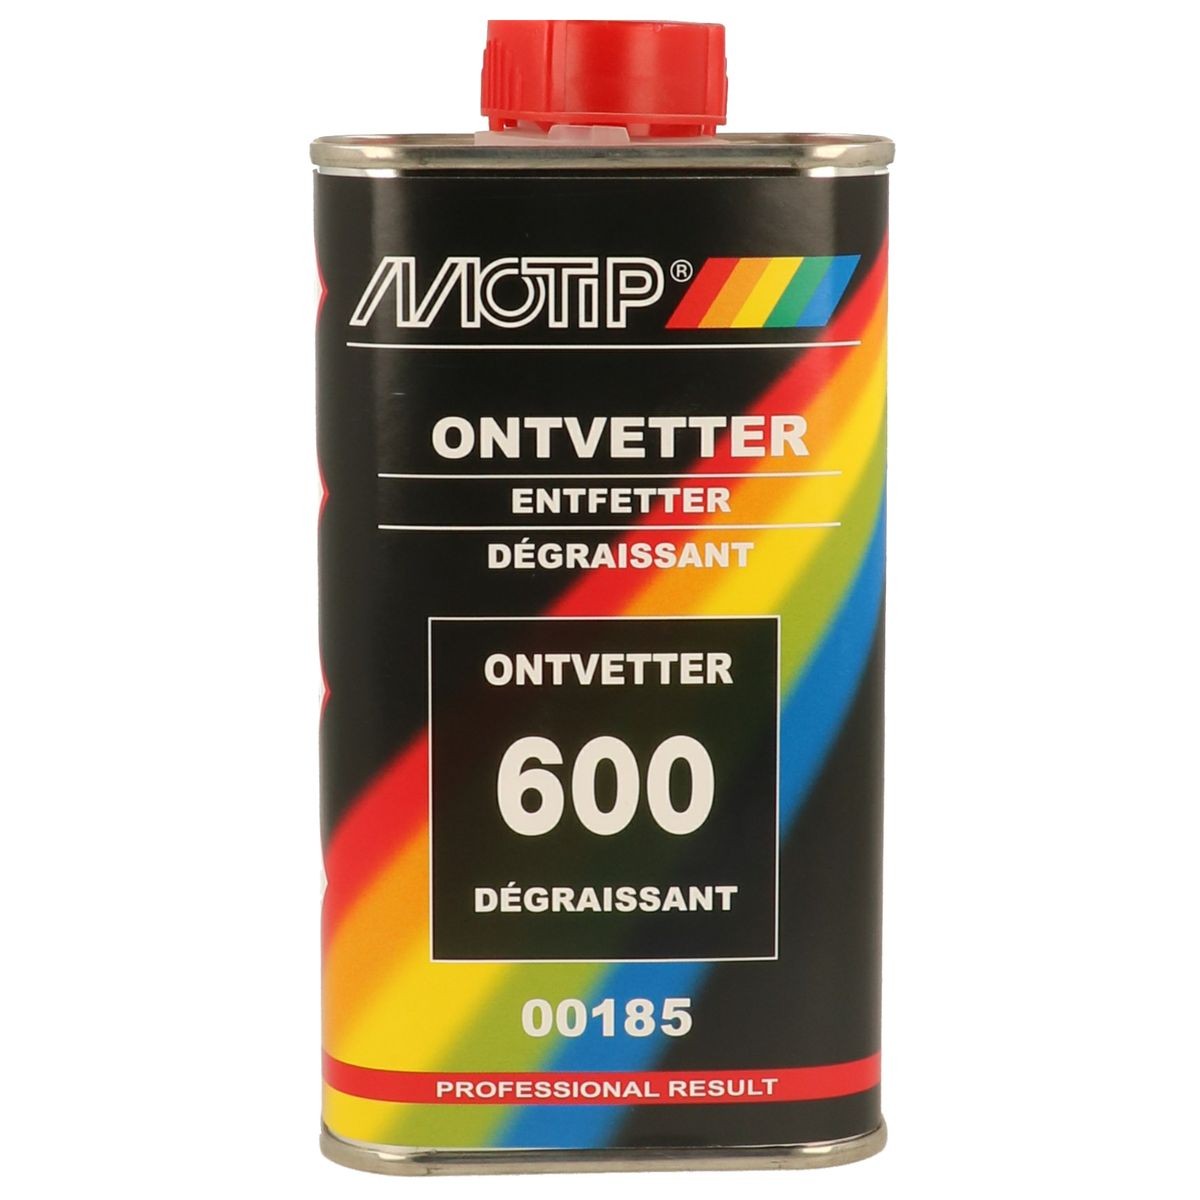 MOTIP  00185 Detergente / Diluente